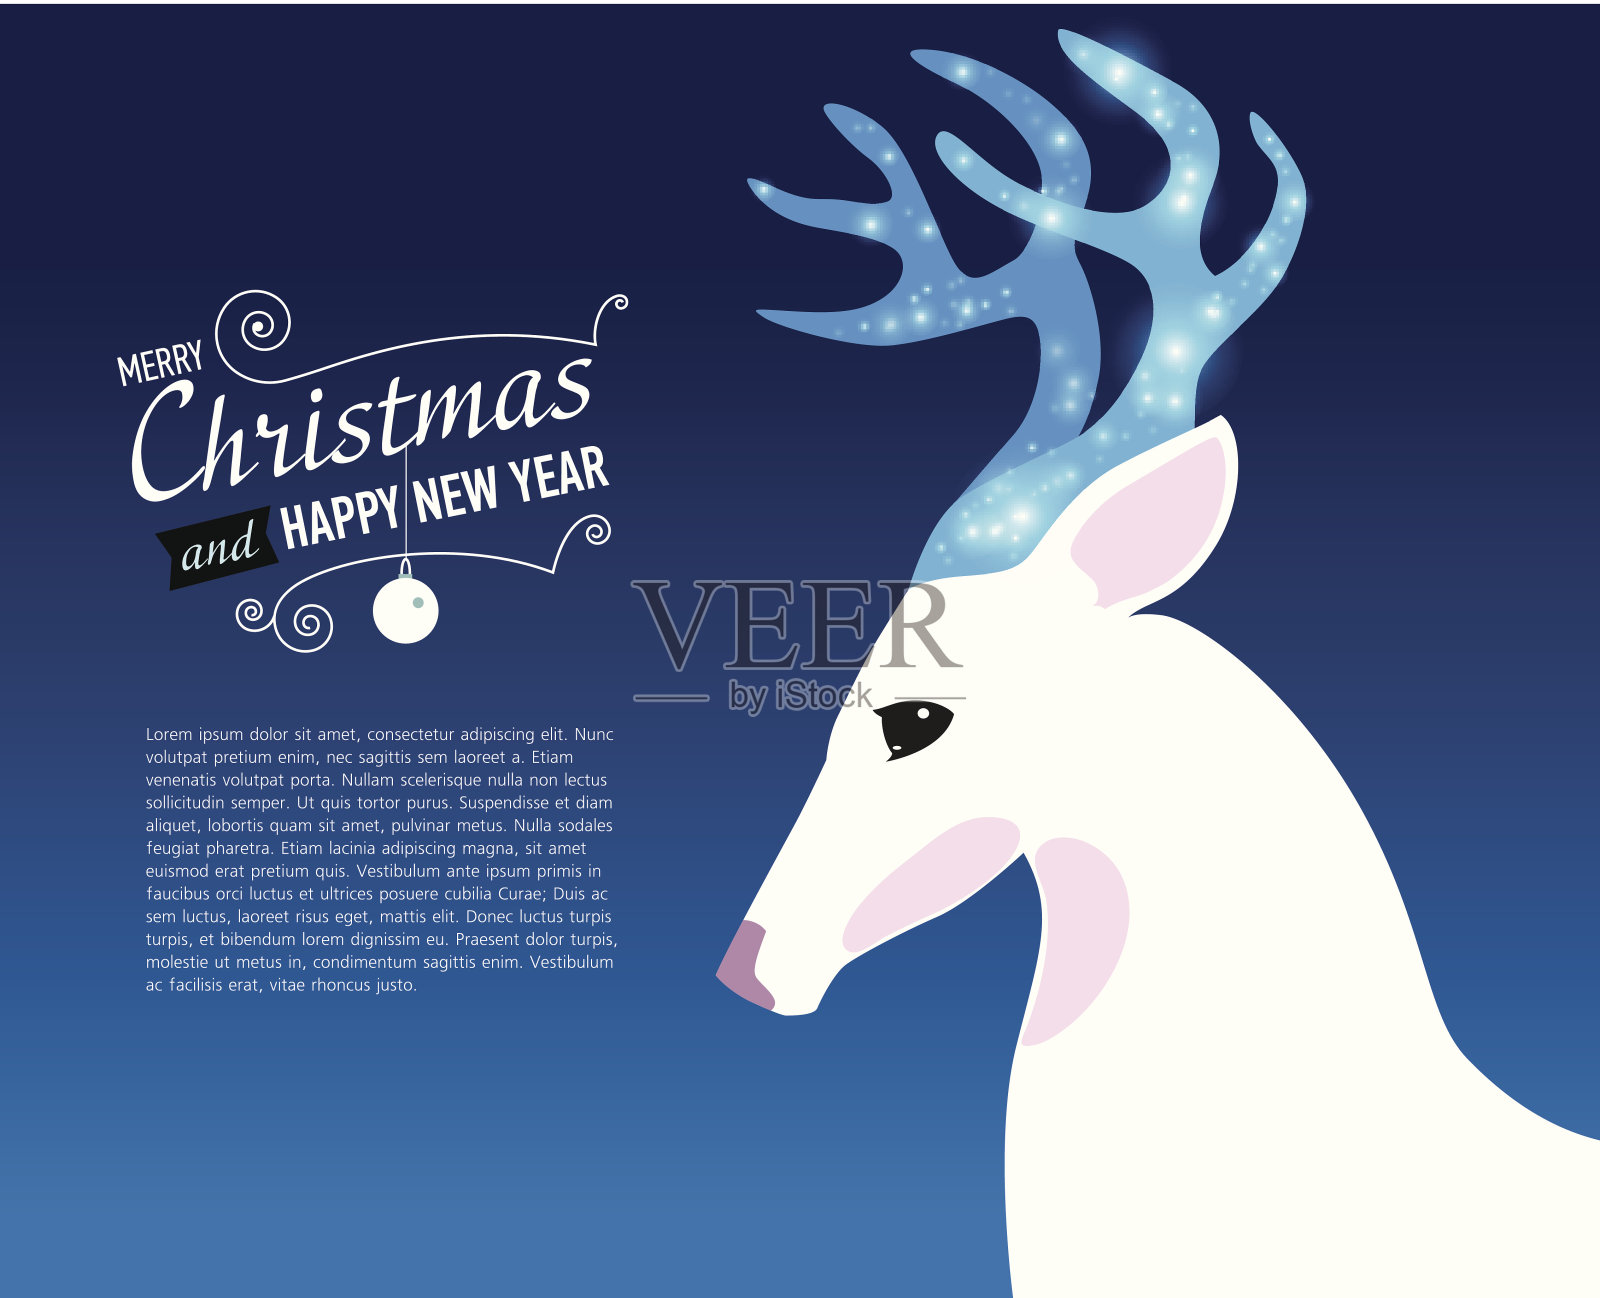 祝你圣诞快乐，并附上鹿的新年贺卡。插画图片素材